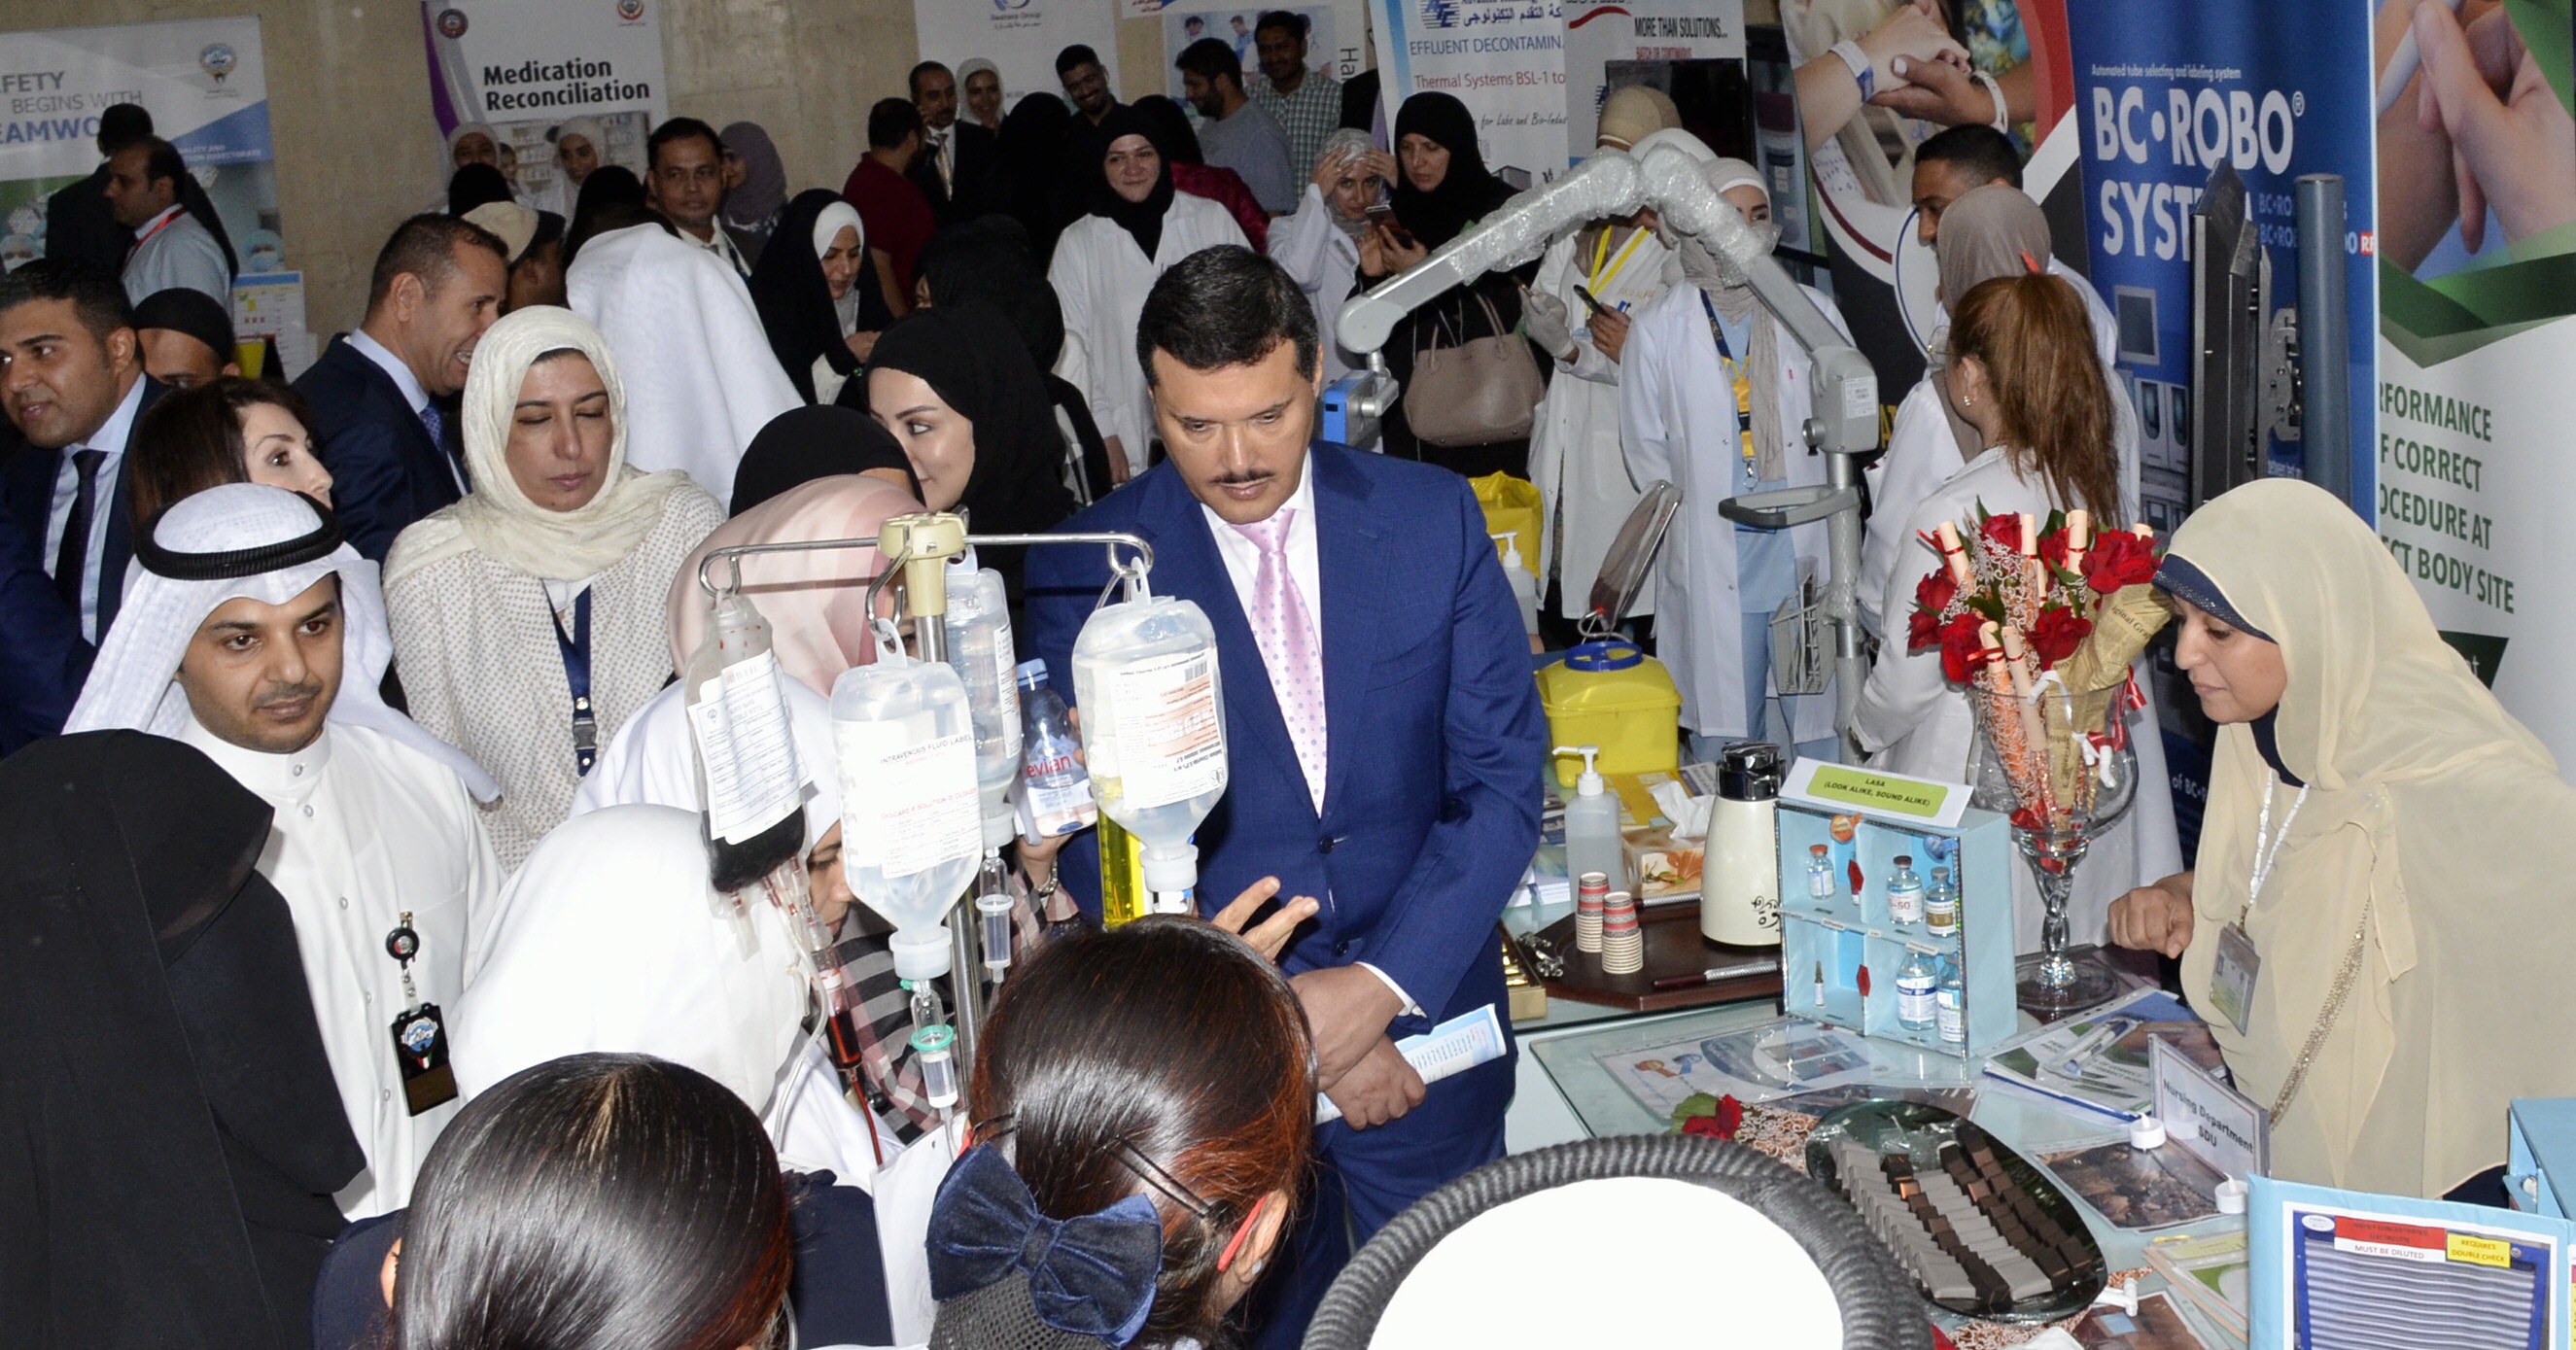 وزير الصحة الكويتي الدكتور جمال الحربي اثناء حضوره الاحتفال باليوم العالمي للسلامة والذي اقيم بمستشفى مبارك الكبير